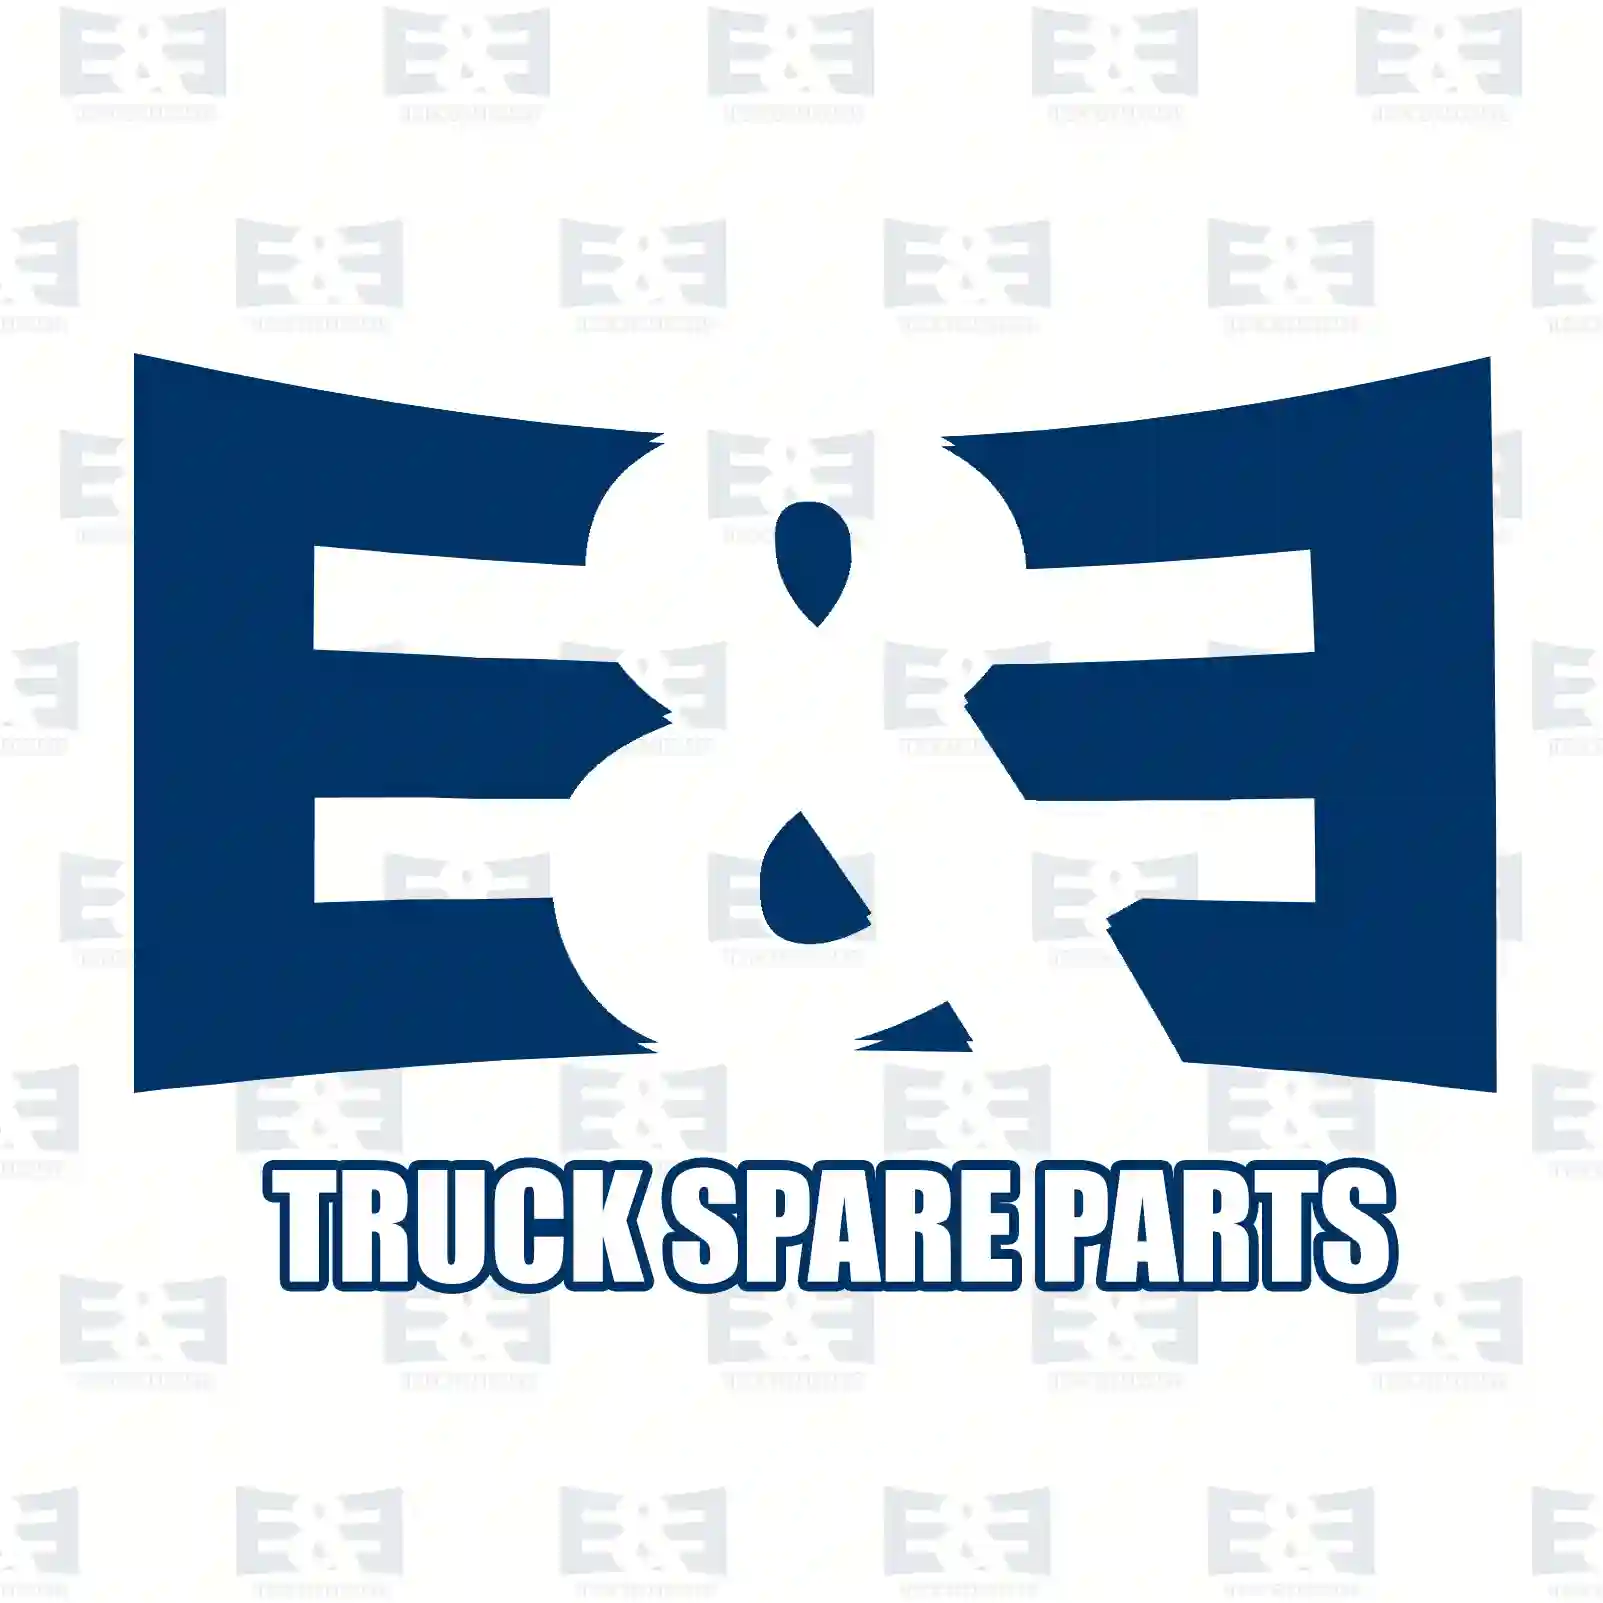 Oil cooler, 2E2207943, 504375378, 5801555580, 5801630224, ZG01669-0008 ||  2E2207943 E&E Truck Spare Parts | Truck Spare Parts, Auotomotive Spare Parts Oil cooler, 2E2207943, 504375378, 5801555580, 5801630224, ZG01669-0008 ||  2E2207943 E&E Truck Spare Parts | Truck Spare Parts, Auotomotive Spare Parts